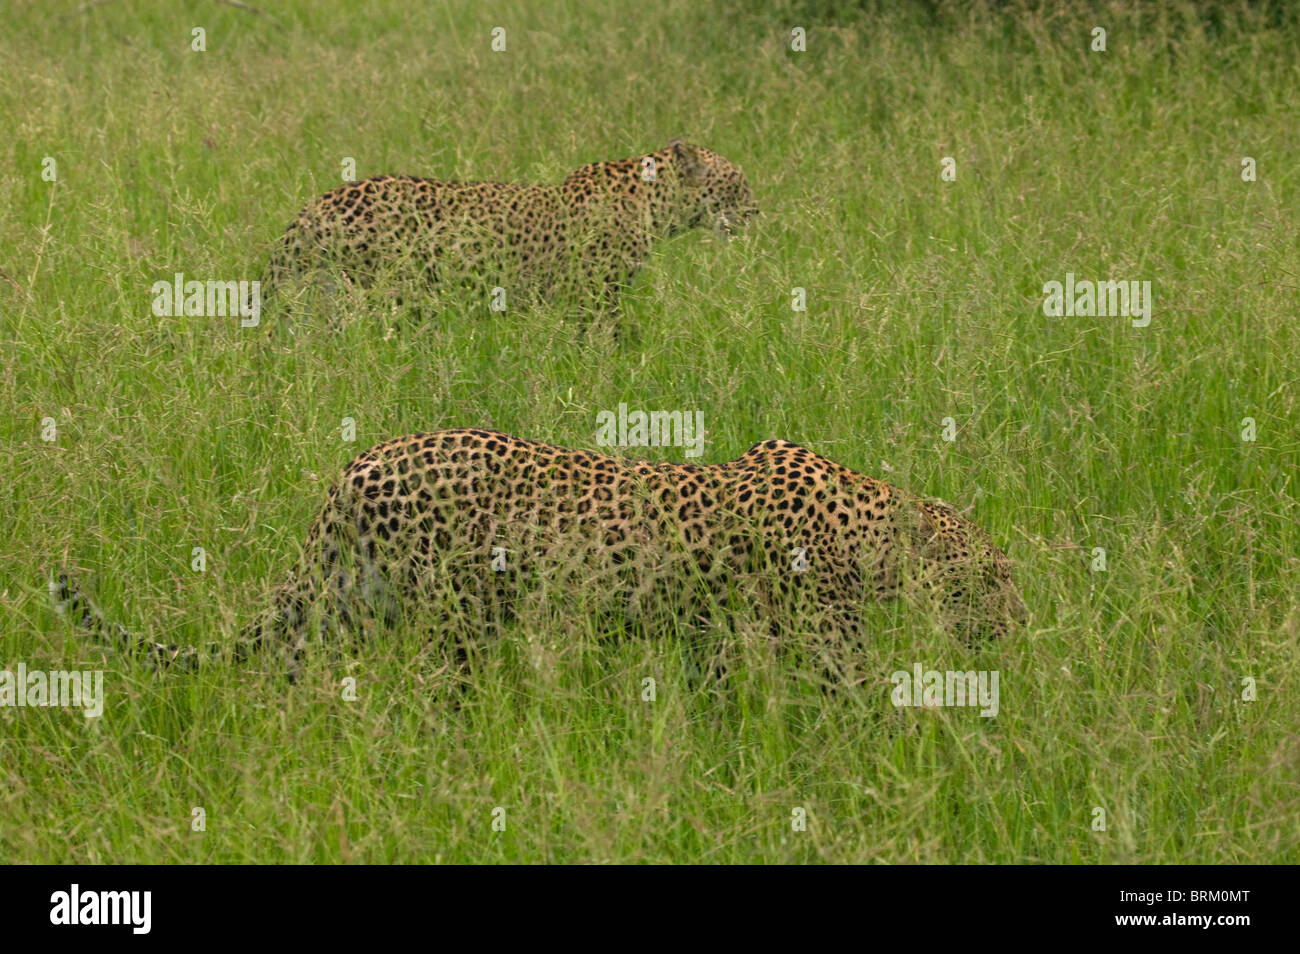 Deux léopards camouflé dans l'herbe verte luxuriante Banque D'Images